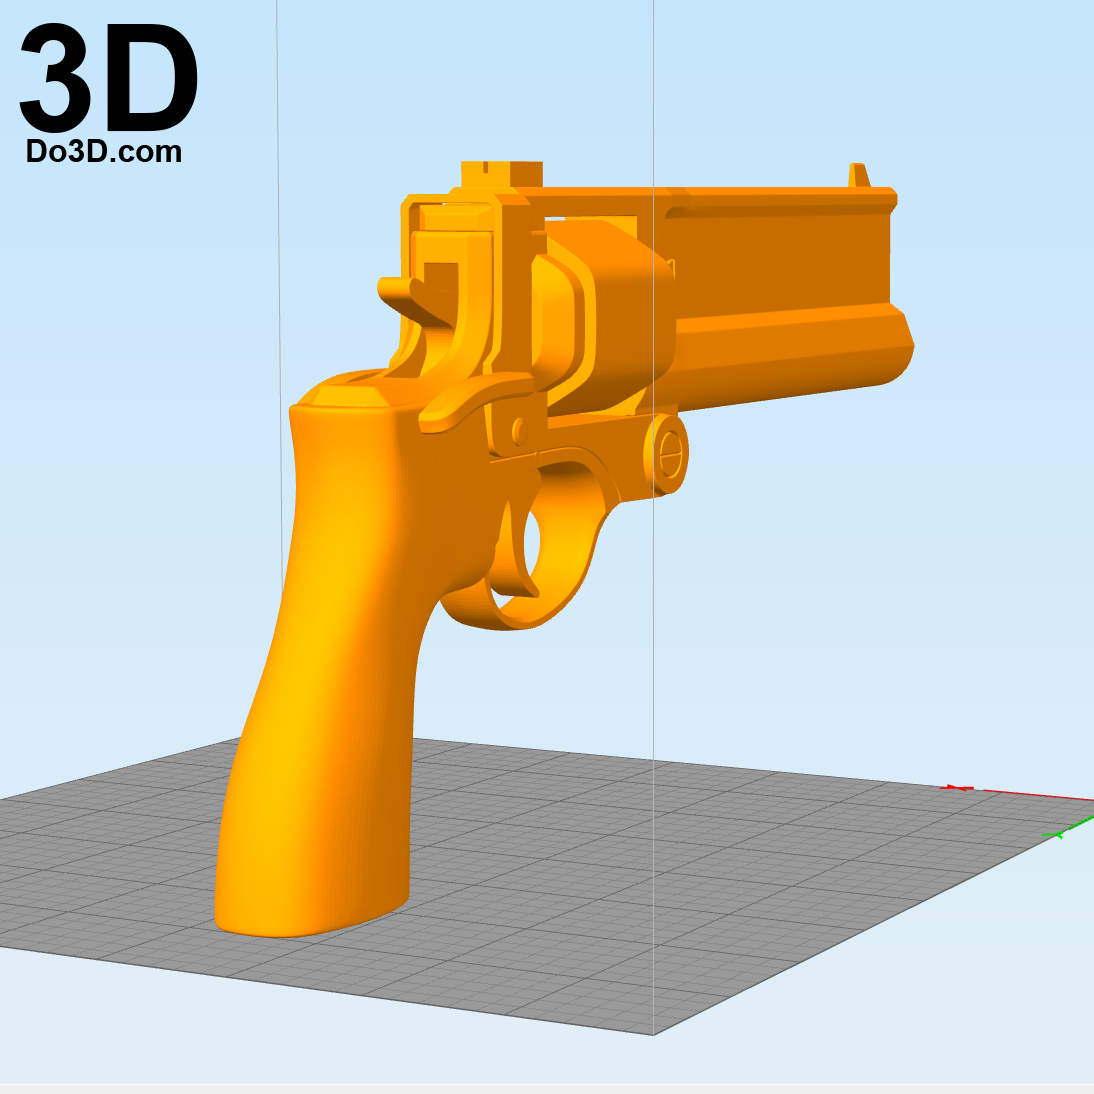 3D Printable Model Metal Gear Solid 5 Gun / Pistol Print File Format